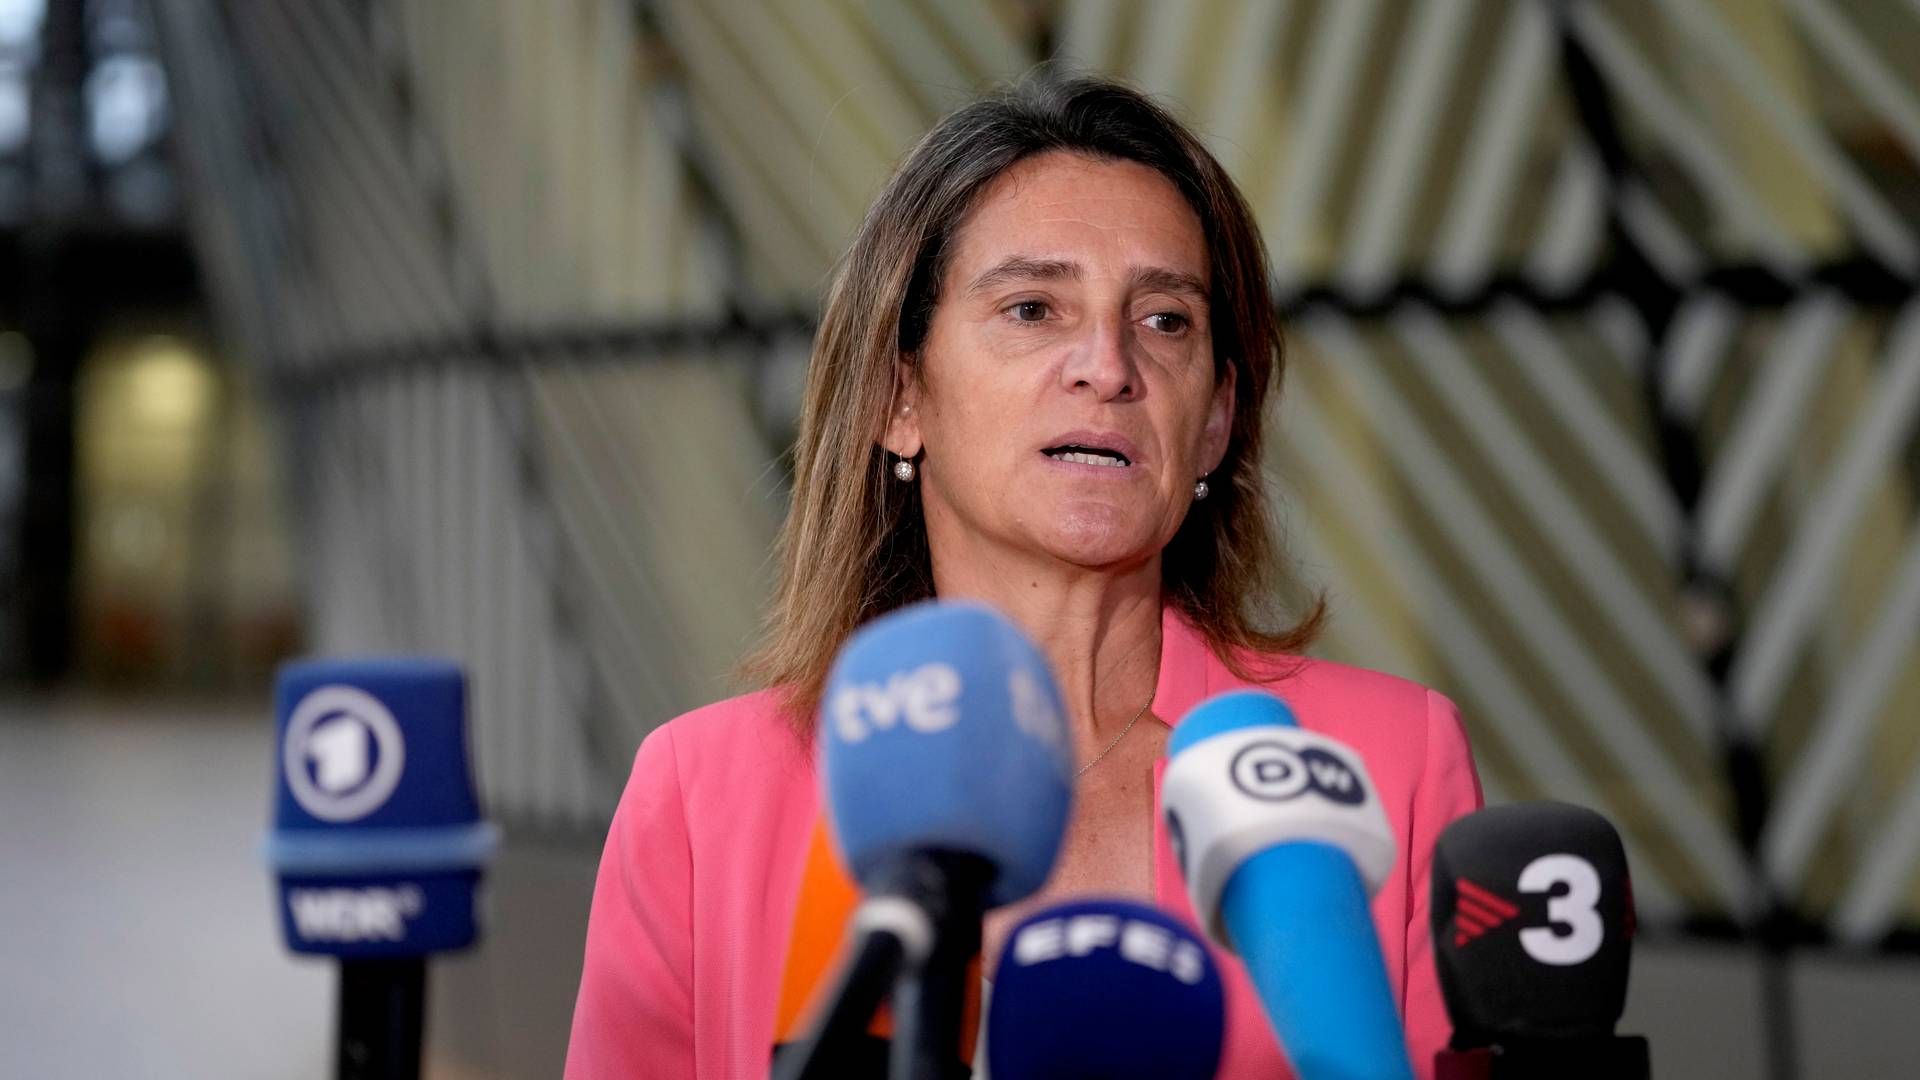 Spaniens minister for grøn omstilling, Teresa Ribera Rodriguez, der her ses ved et tidligere ministerrådsmøde i Bruxelles, er meget kritisk overfor den tyske ageren i sagen om forbrændingsmotorer. | Foto: Virginia Mayo/AP/Ritzau Scanpix